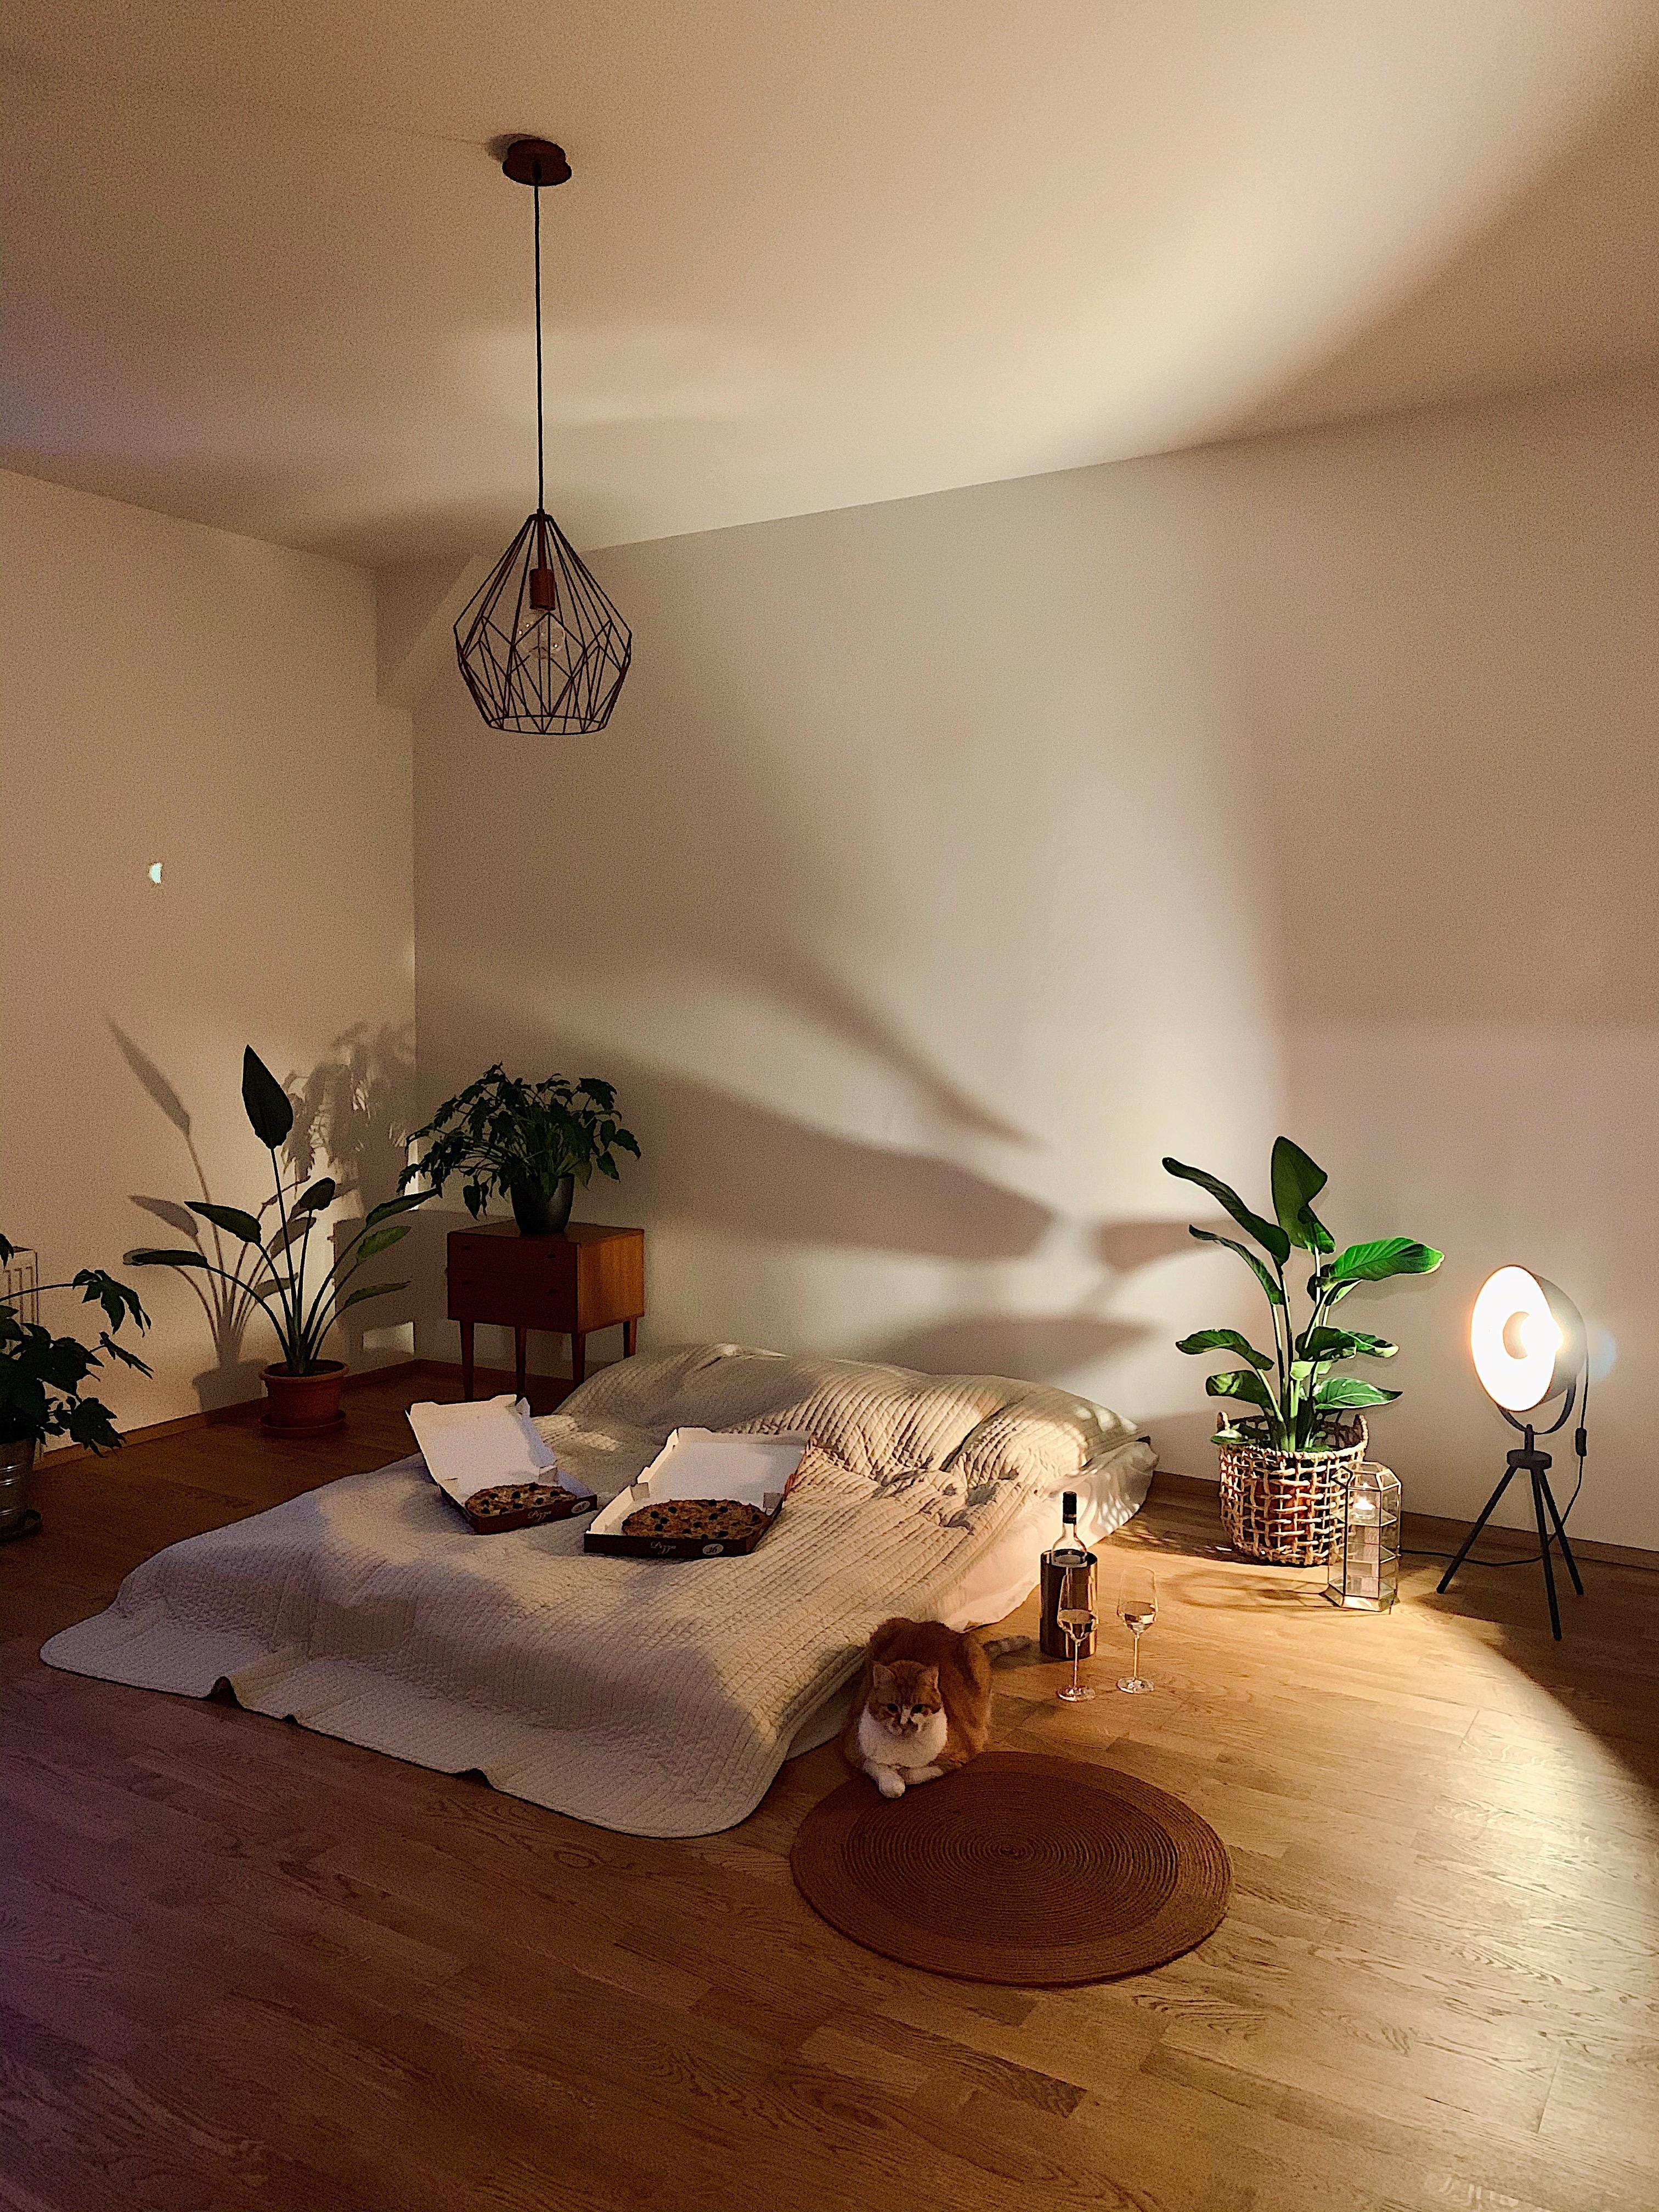 Das wichtigste ist schon in der neuen Wohnung: Bett, Katzen und Pflanzen 🌚
#zimmerpflanzen#bedroom#schlafzimmer